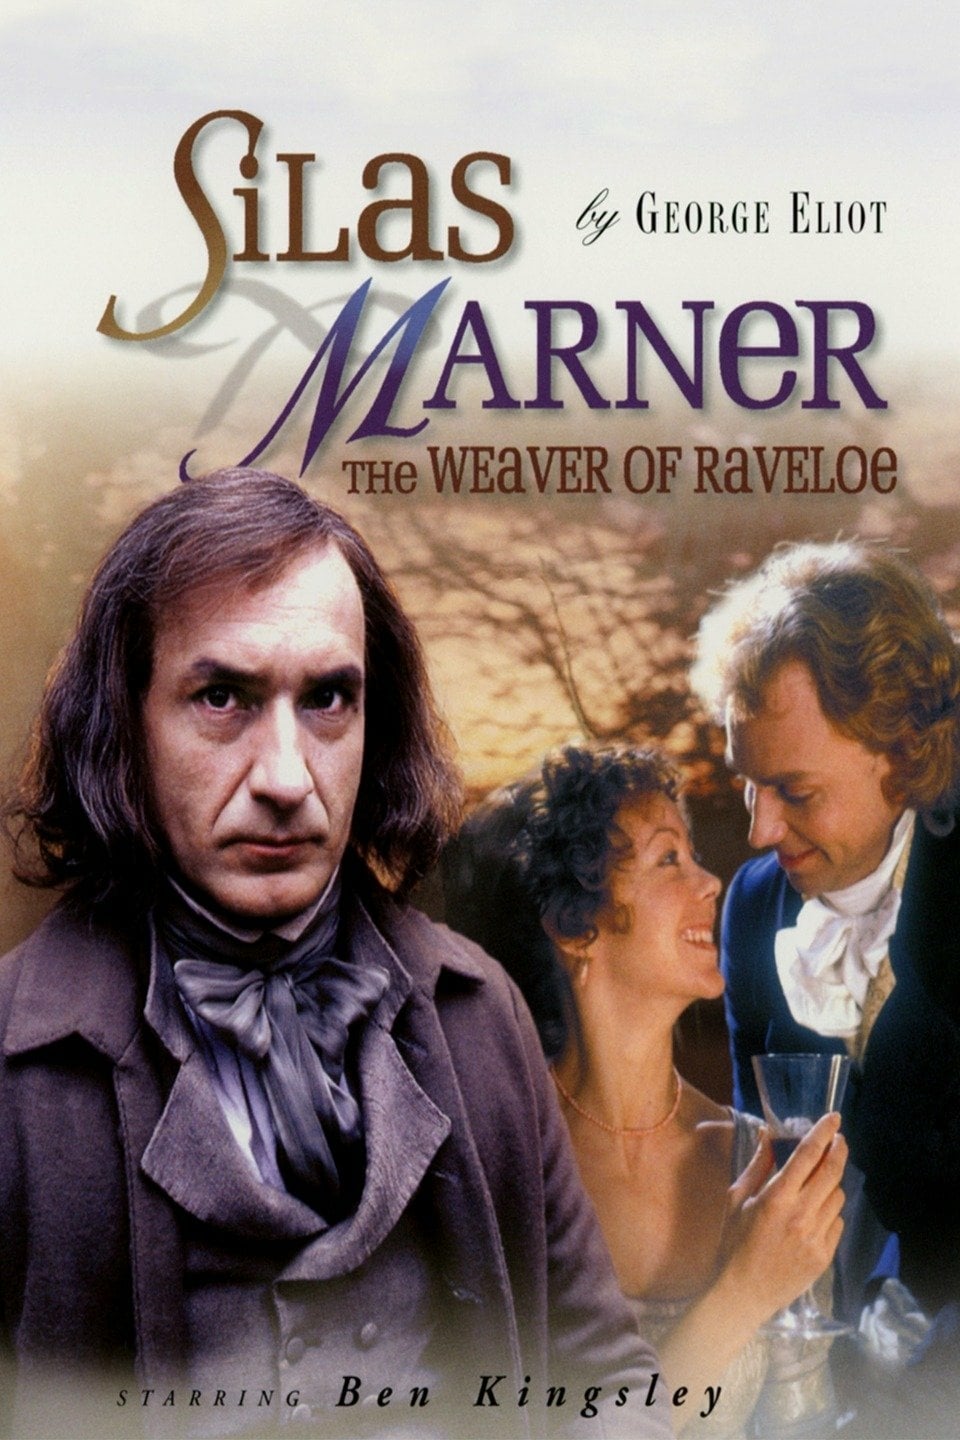 Silas Marner: The Weaver of Raveloe Poster